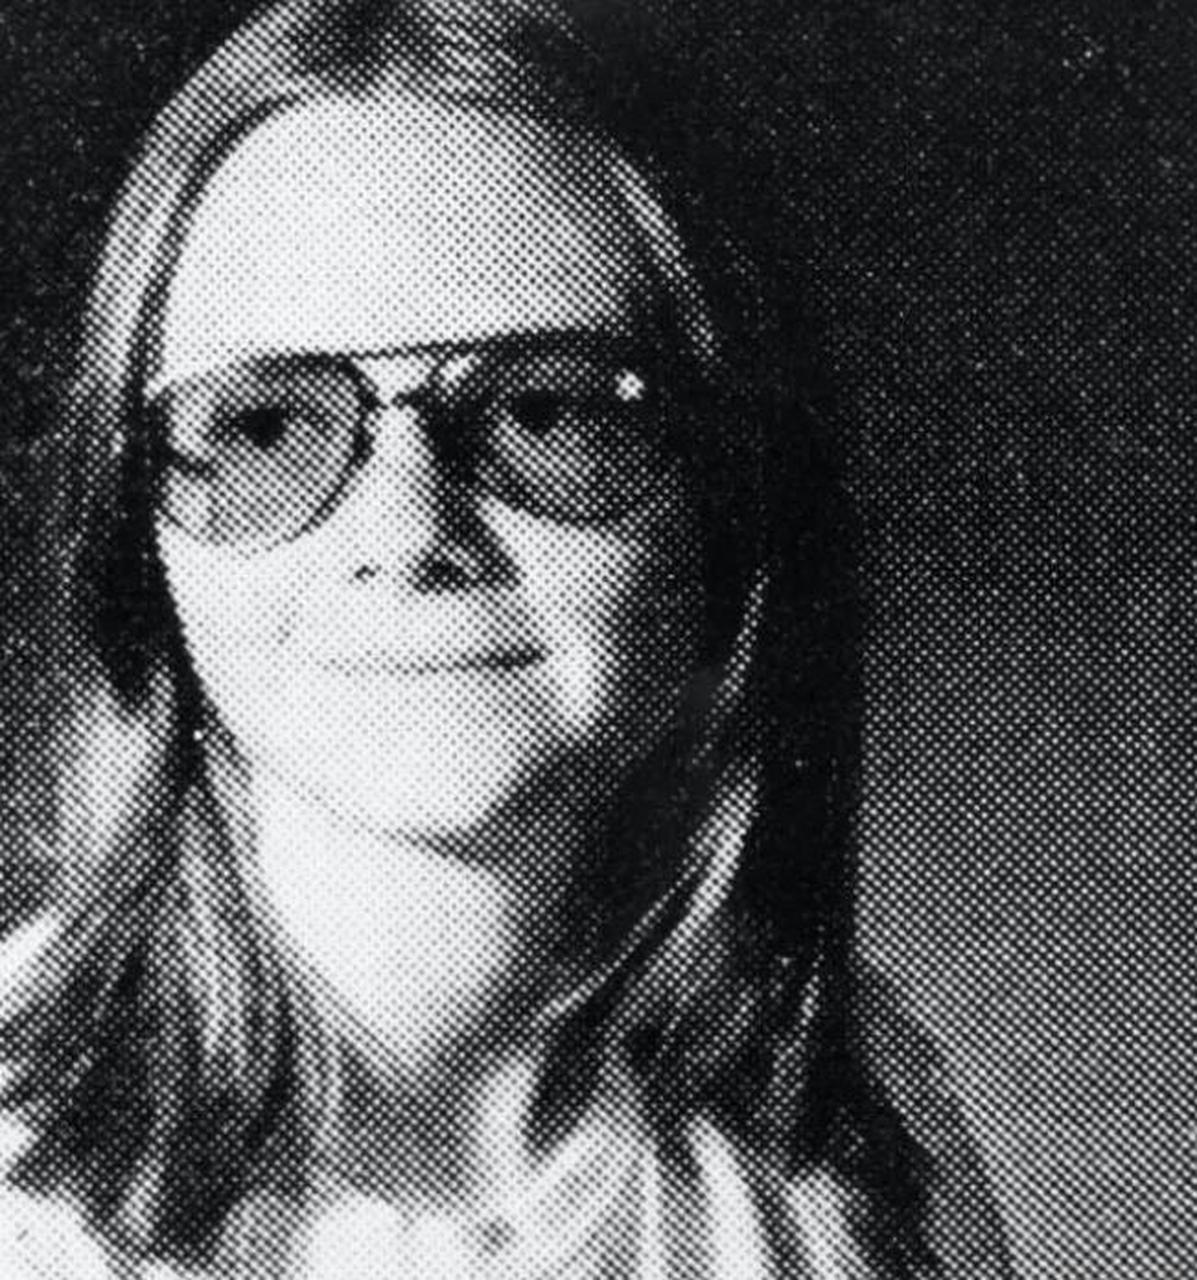 1979年,布伦达·斯宾塞被逮捕时的照片